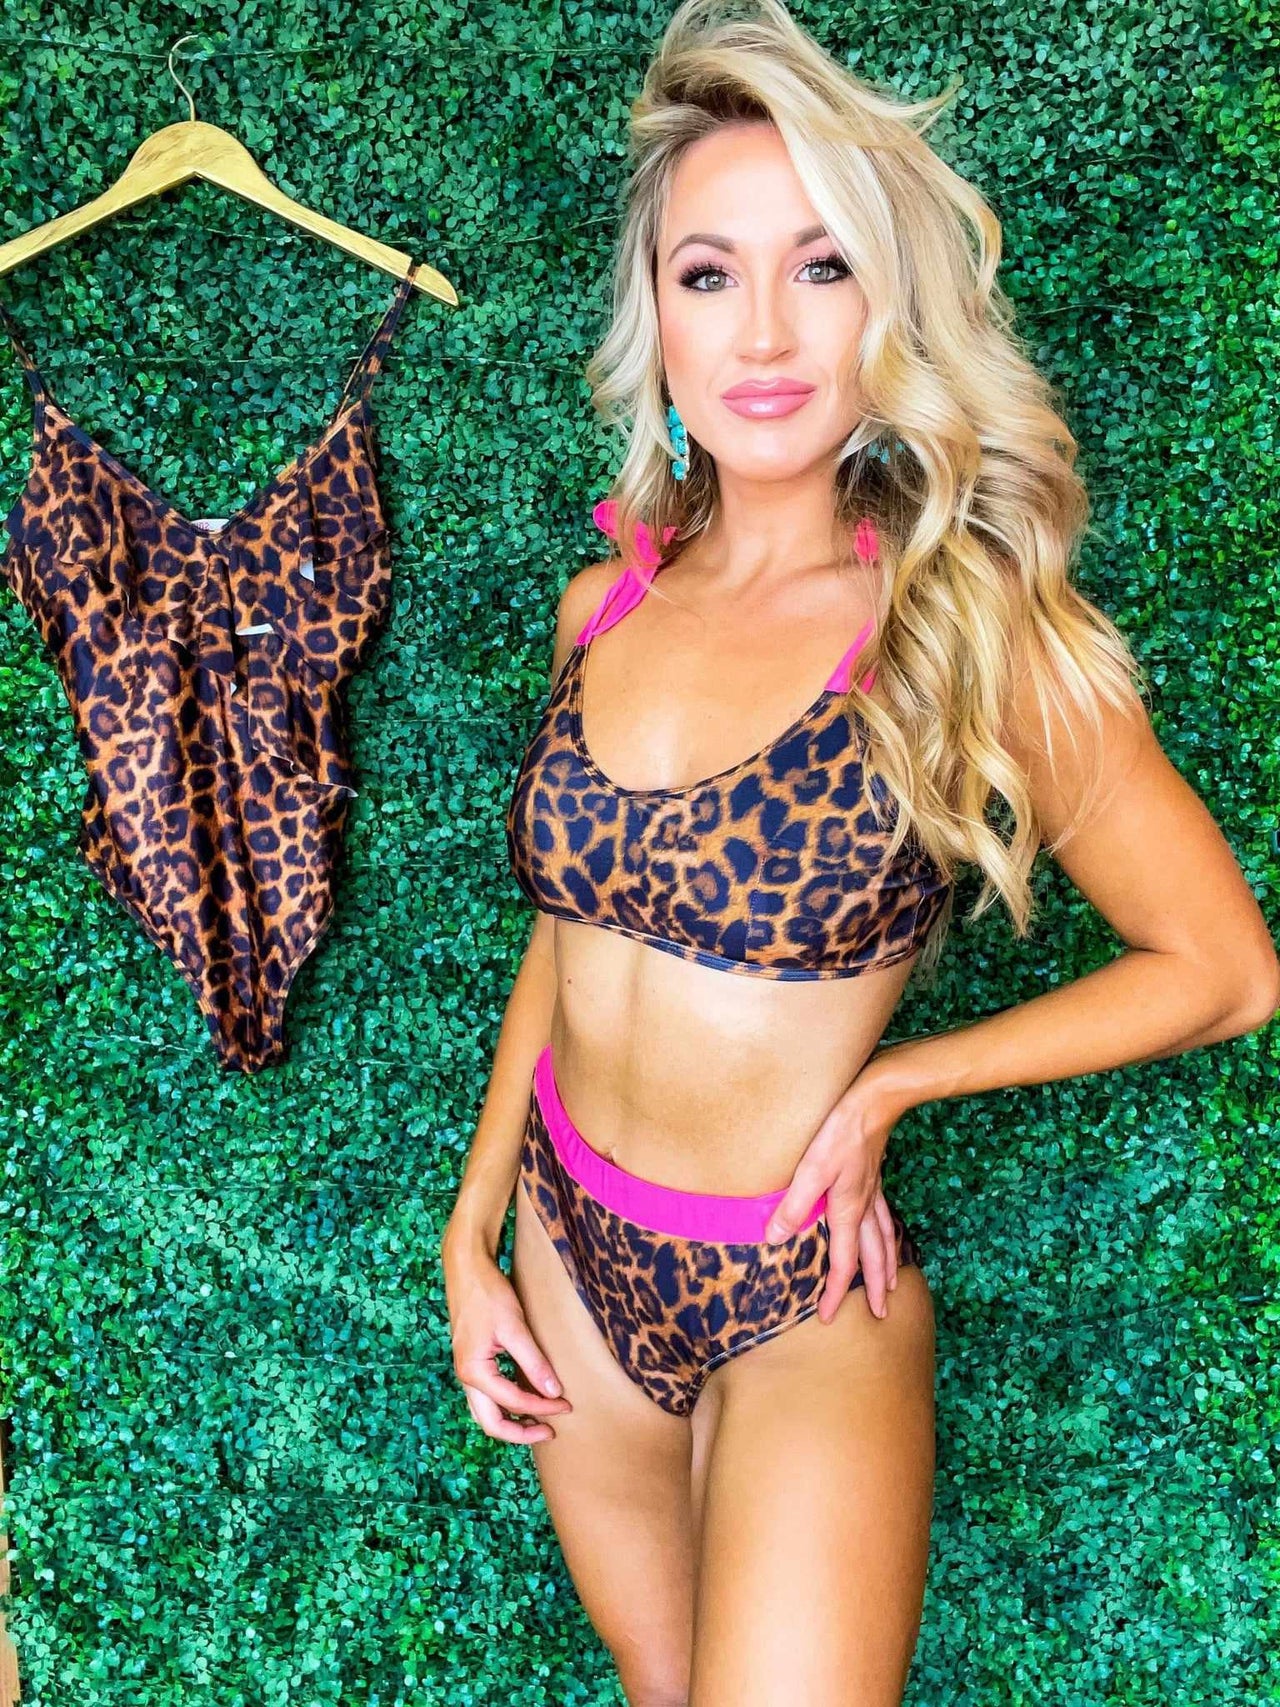 Leopard print bikini